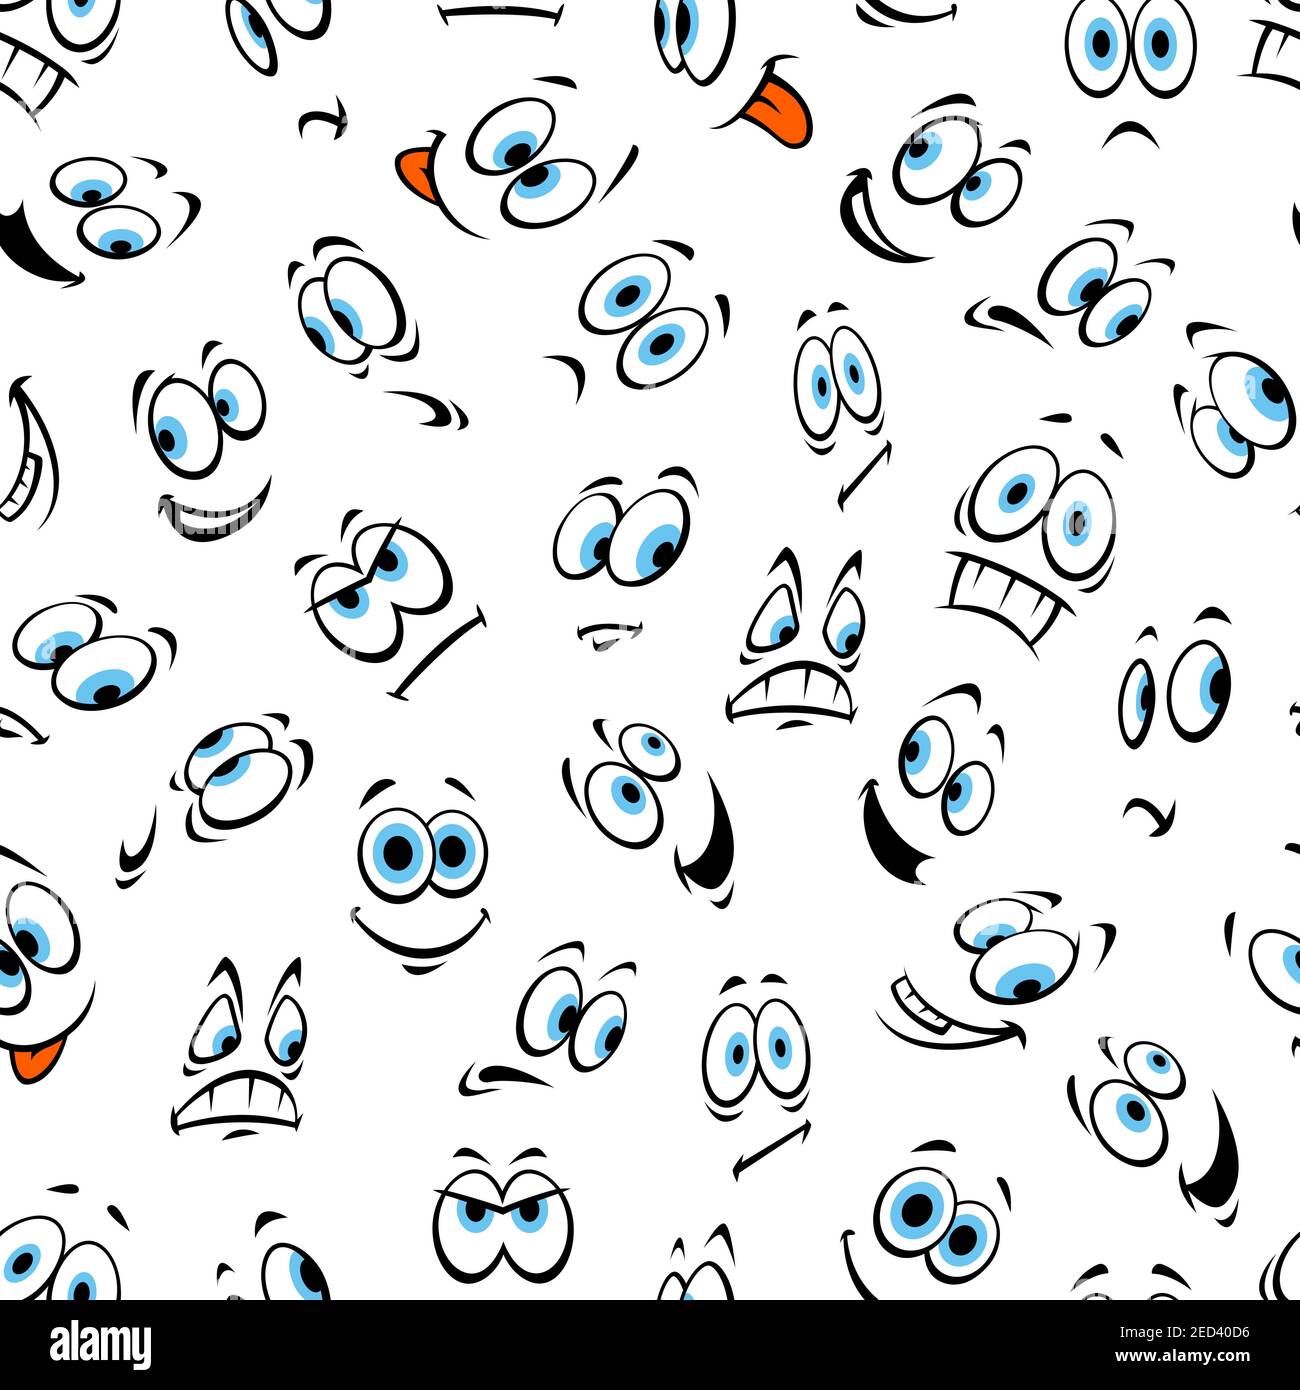 Gesicht und Smiley nahtlose Muster von Cartoon Emoticon mit verschiedenen Mimik. Glücklich lächelnd, erschrocken, überrascht, wütend, traurig, aufgeregt, verwirrt Stock Vektor